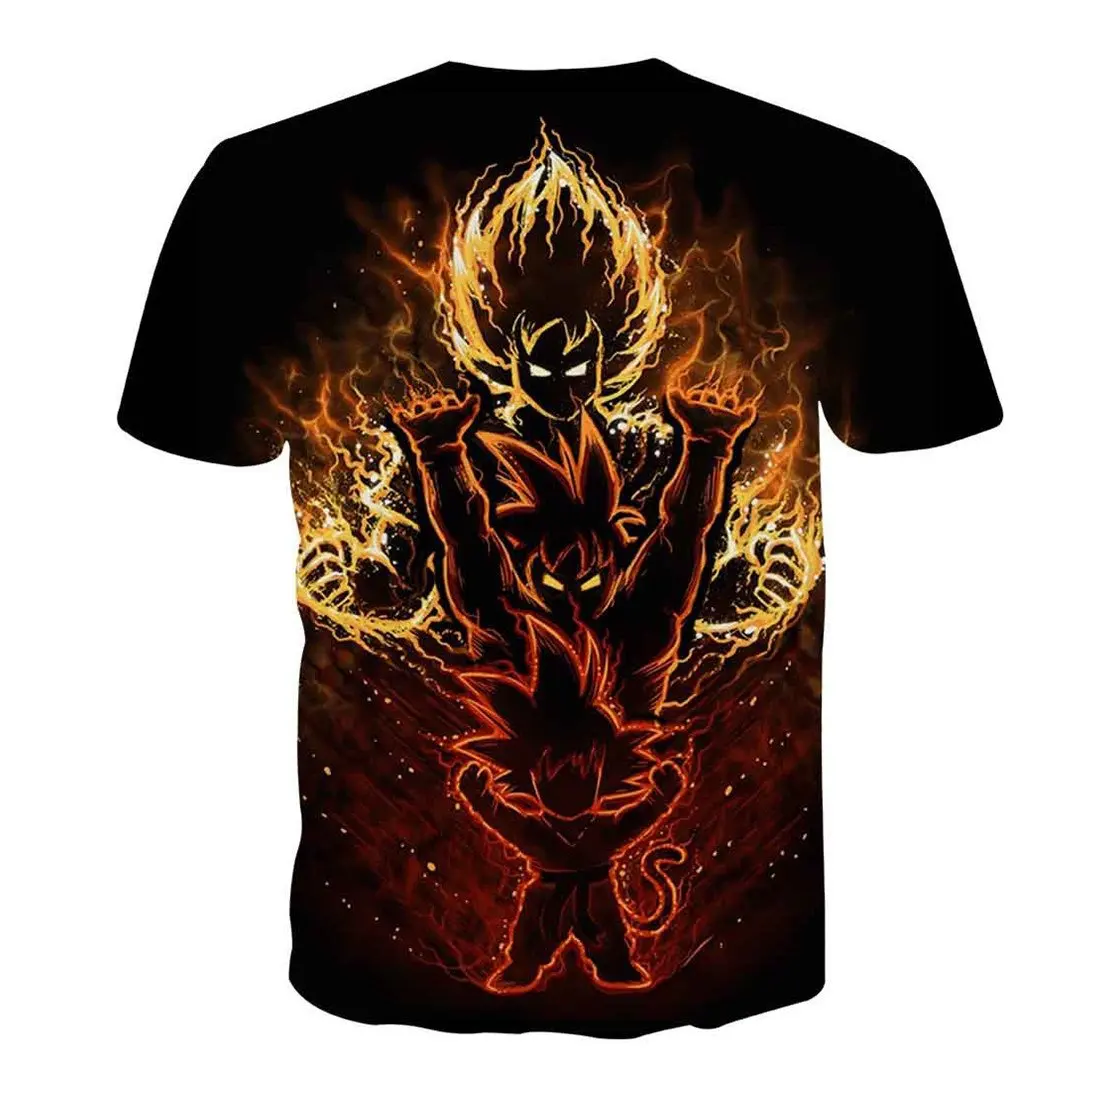 Dragon Ball Z Футболка Мужская Супер Saiyan Battle Son Goku черная футболка для отдыха с драконом летняя футболка с 3D принтом xxxtentcaion